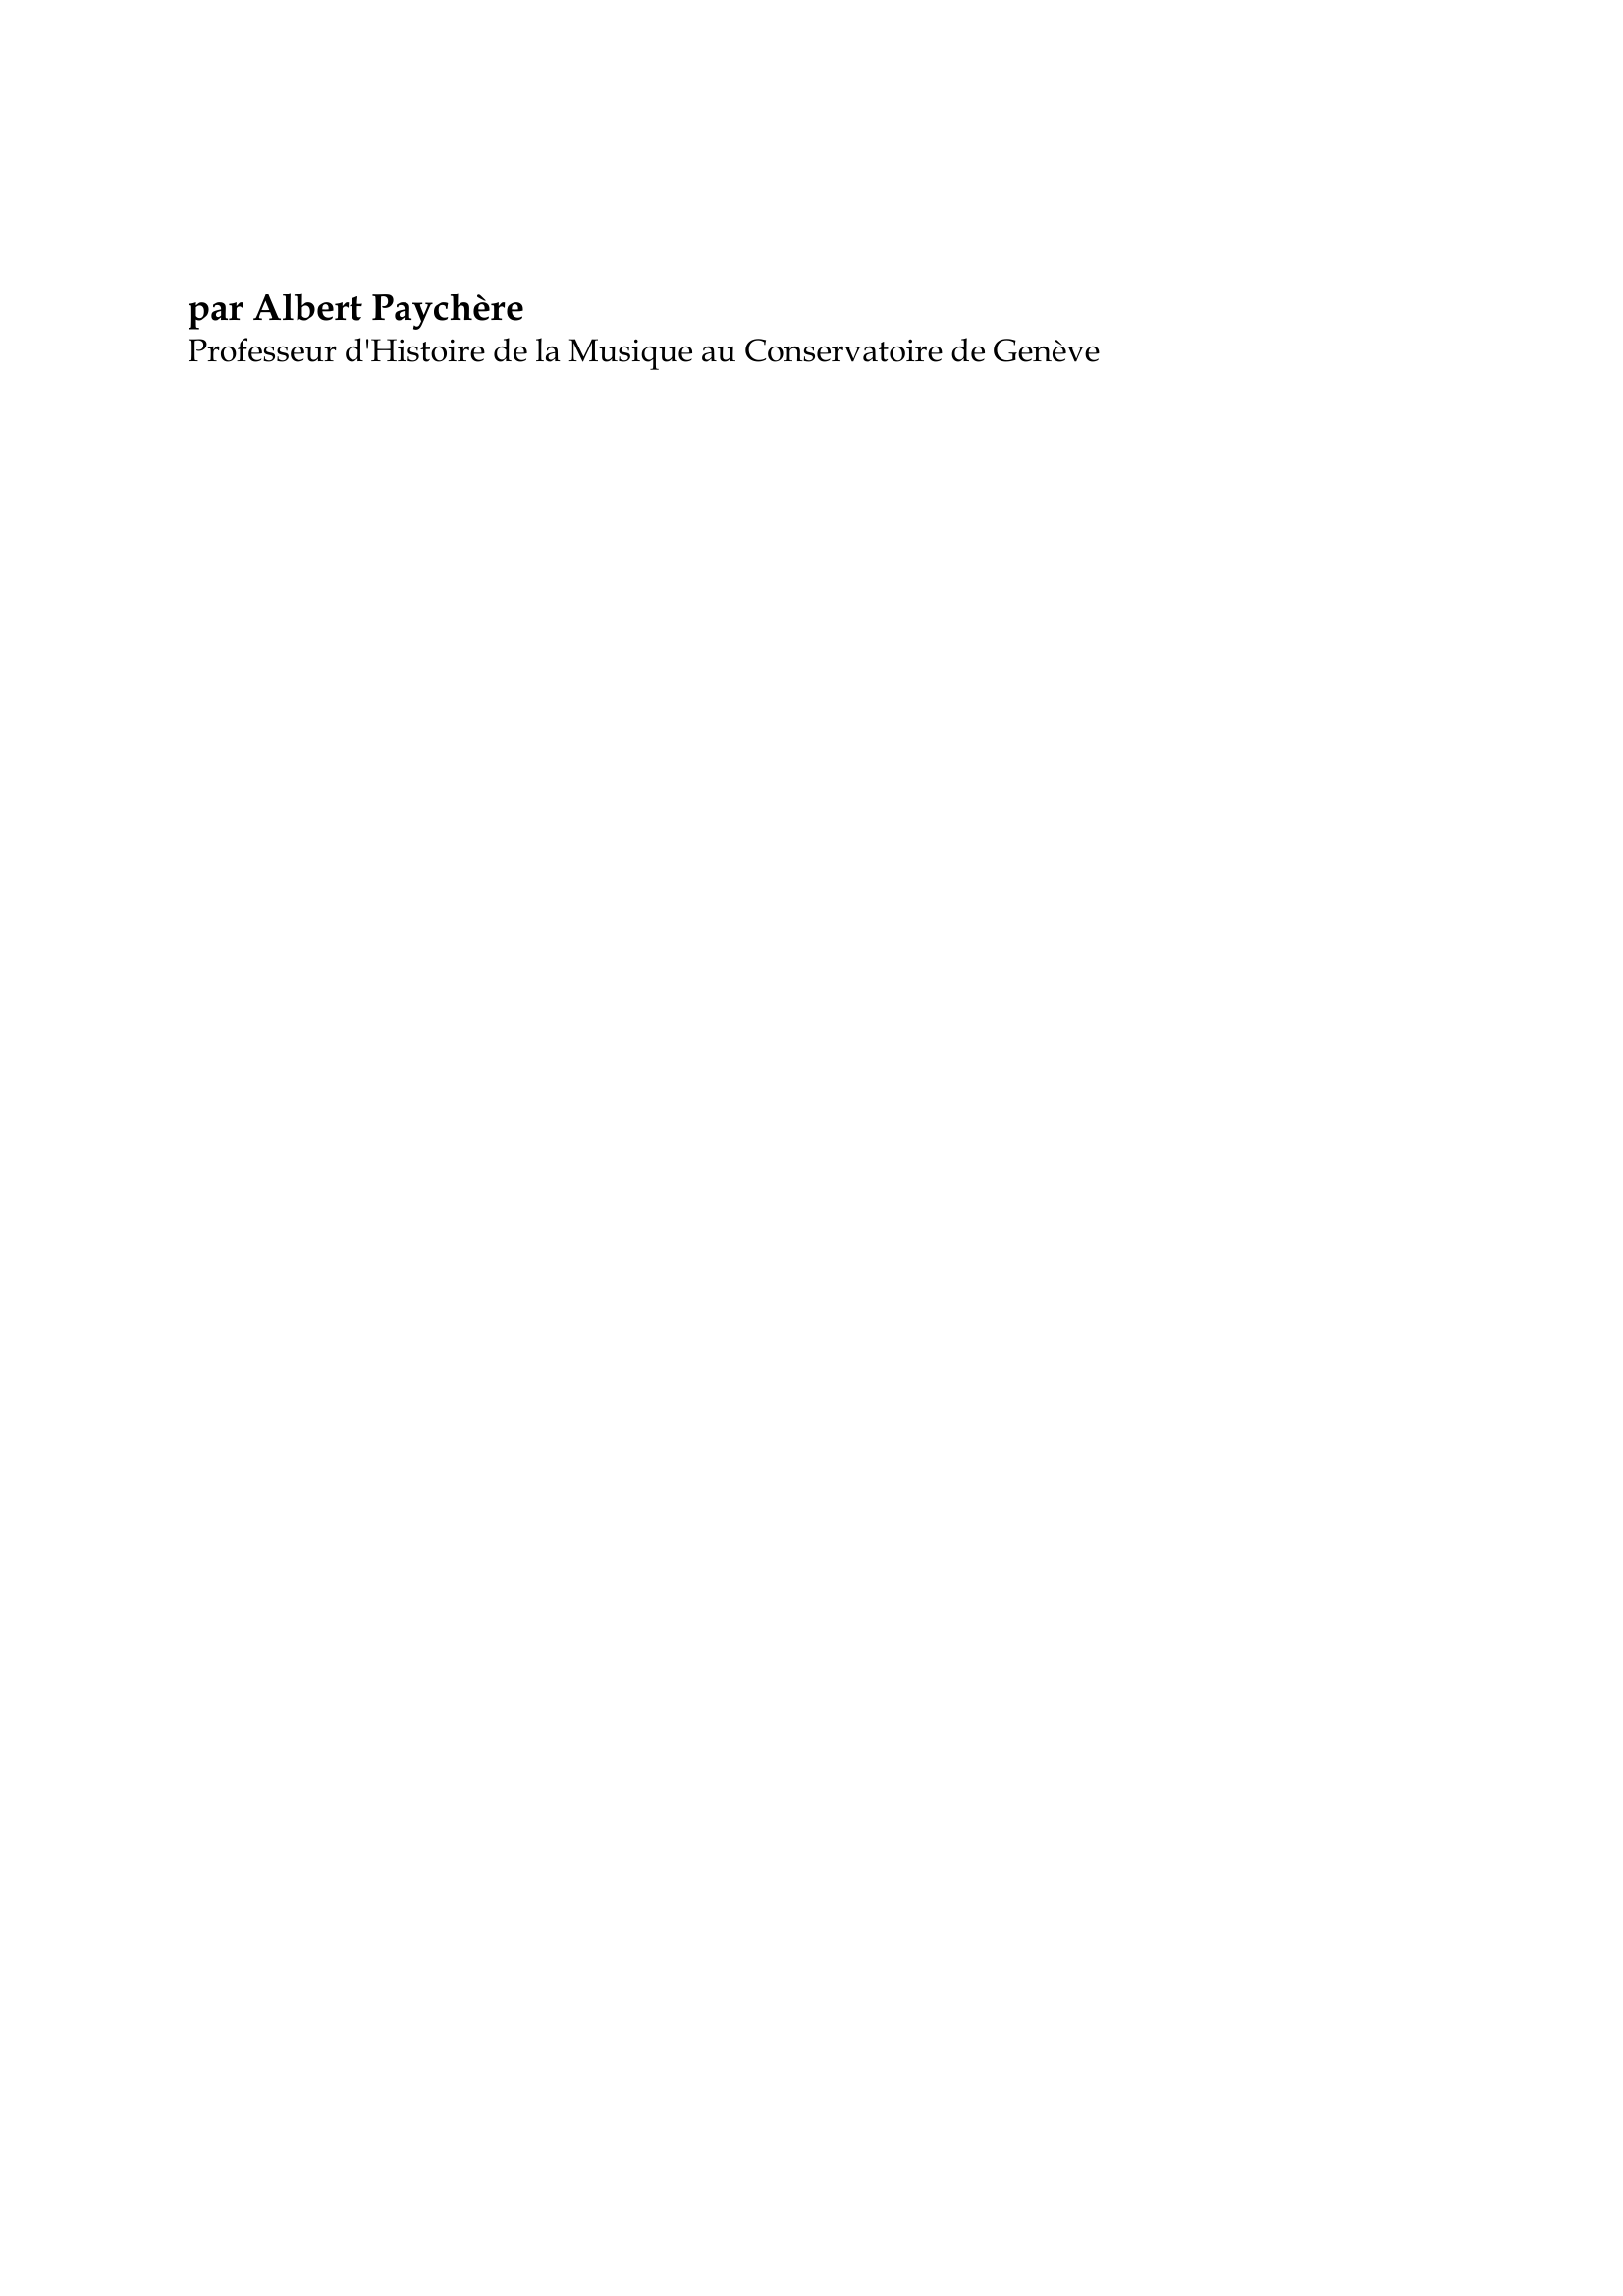 Prévisualisation du document Christoph Willibald Gluck

par Albert Paychère
Professeur d'Histoire de la Musique au Conservatoire de Genève

La carrière de Gluck, comme celle de Lully, porte la marque d'une
providence exceptionnelle.